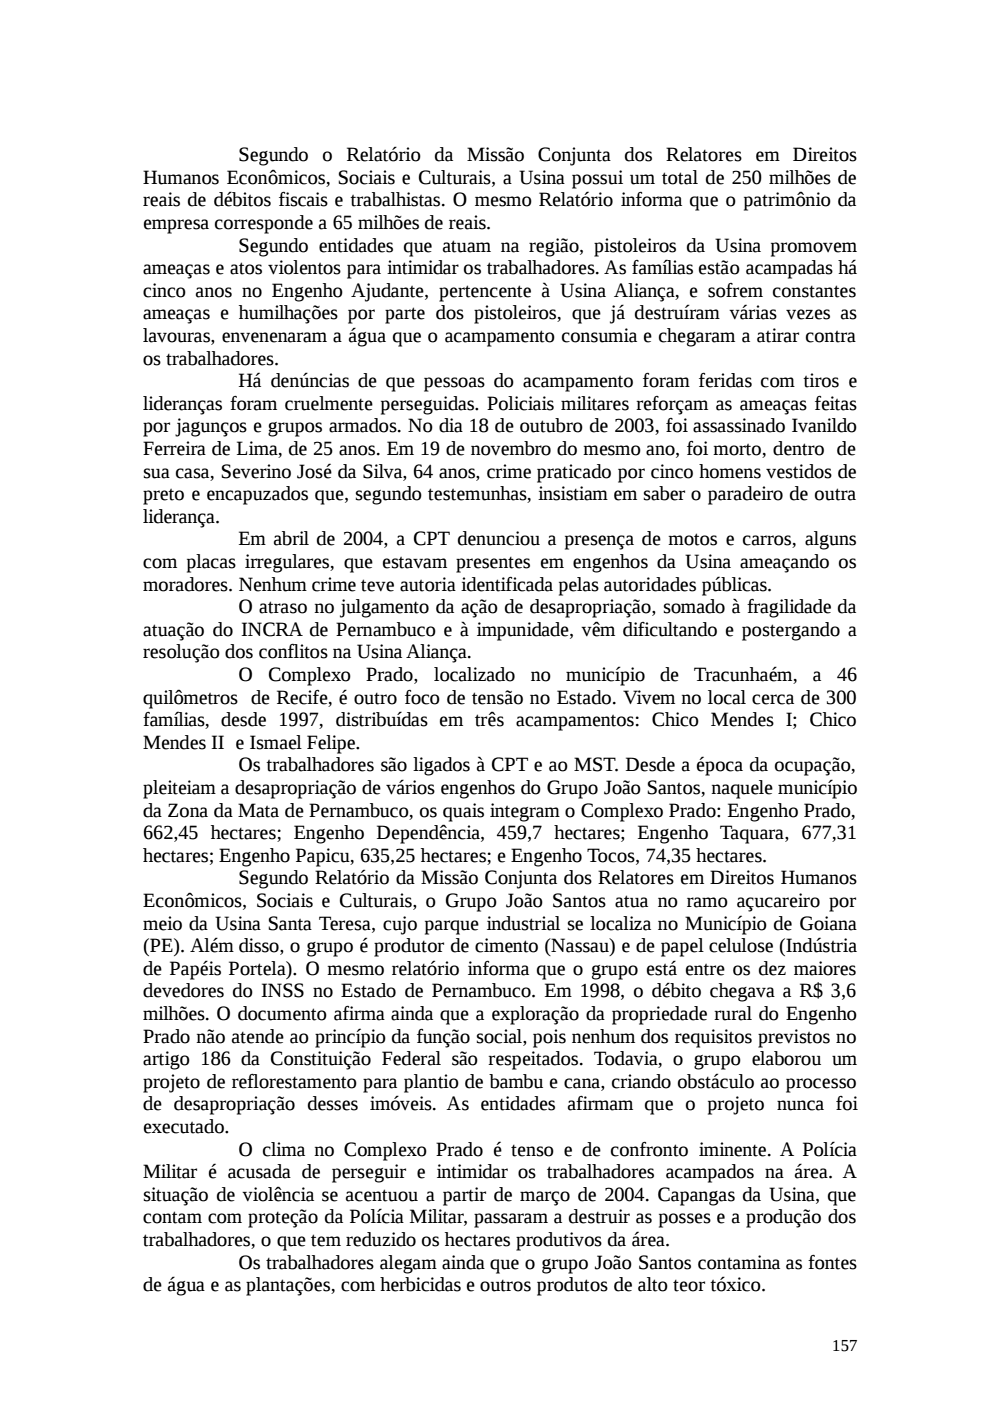 Page 157 from Relatório final da comissão